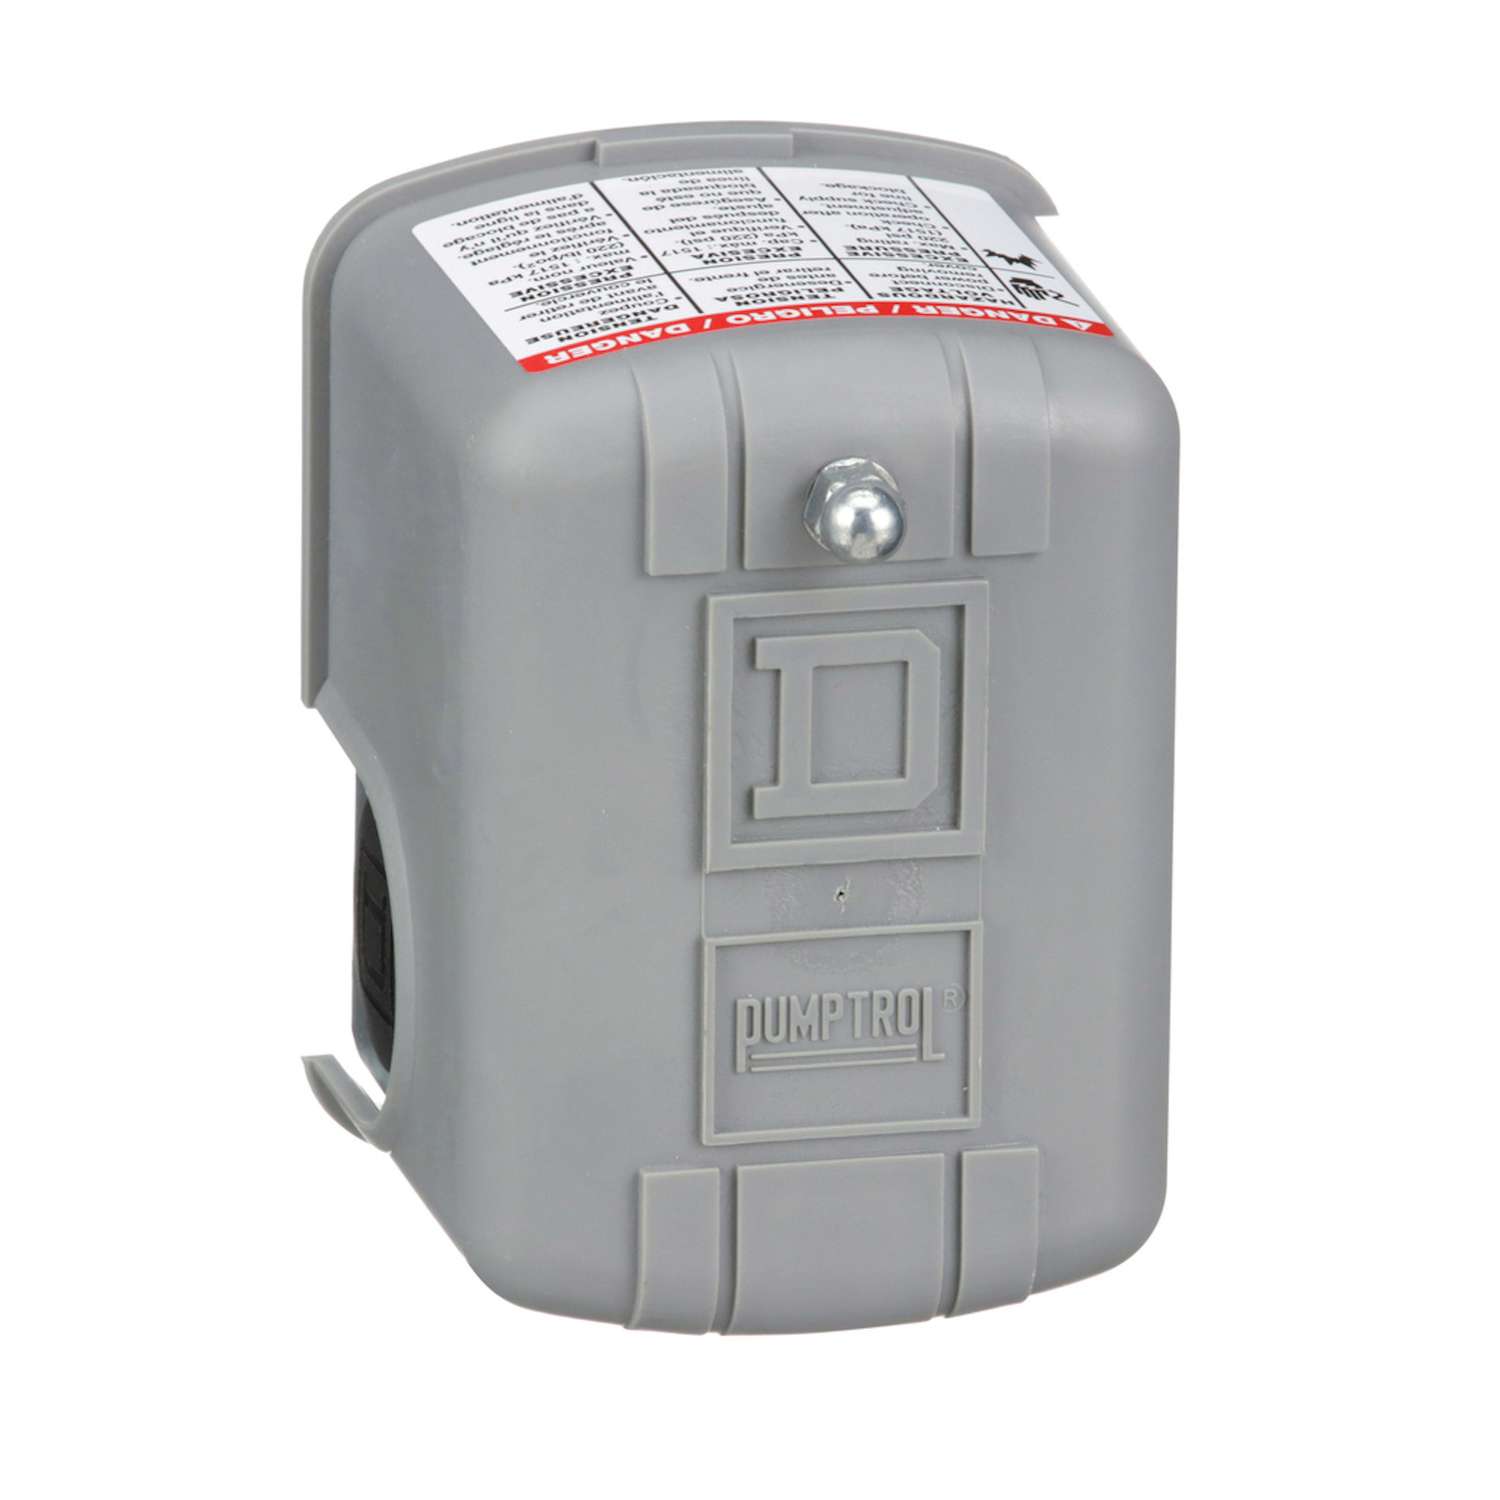 Waterproof Pumptrol Water Pressure Switch with Low Pressure Cut-Off